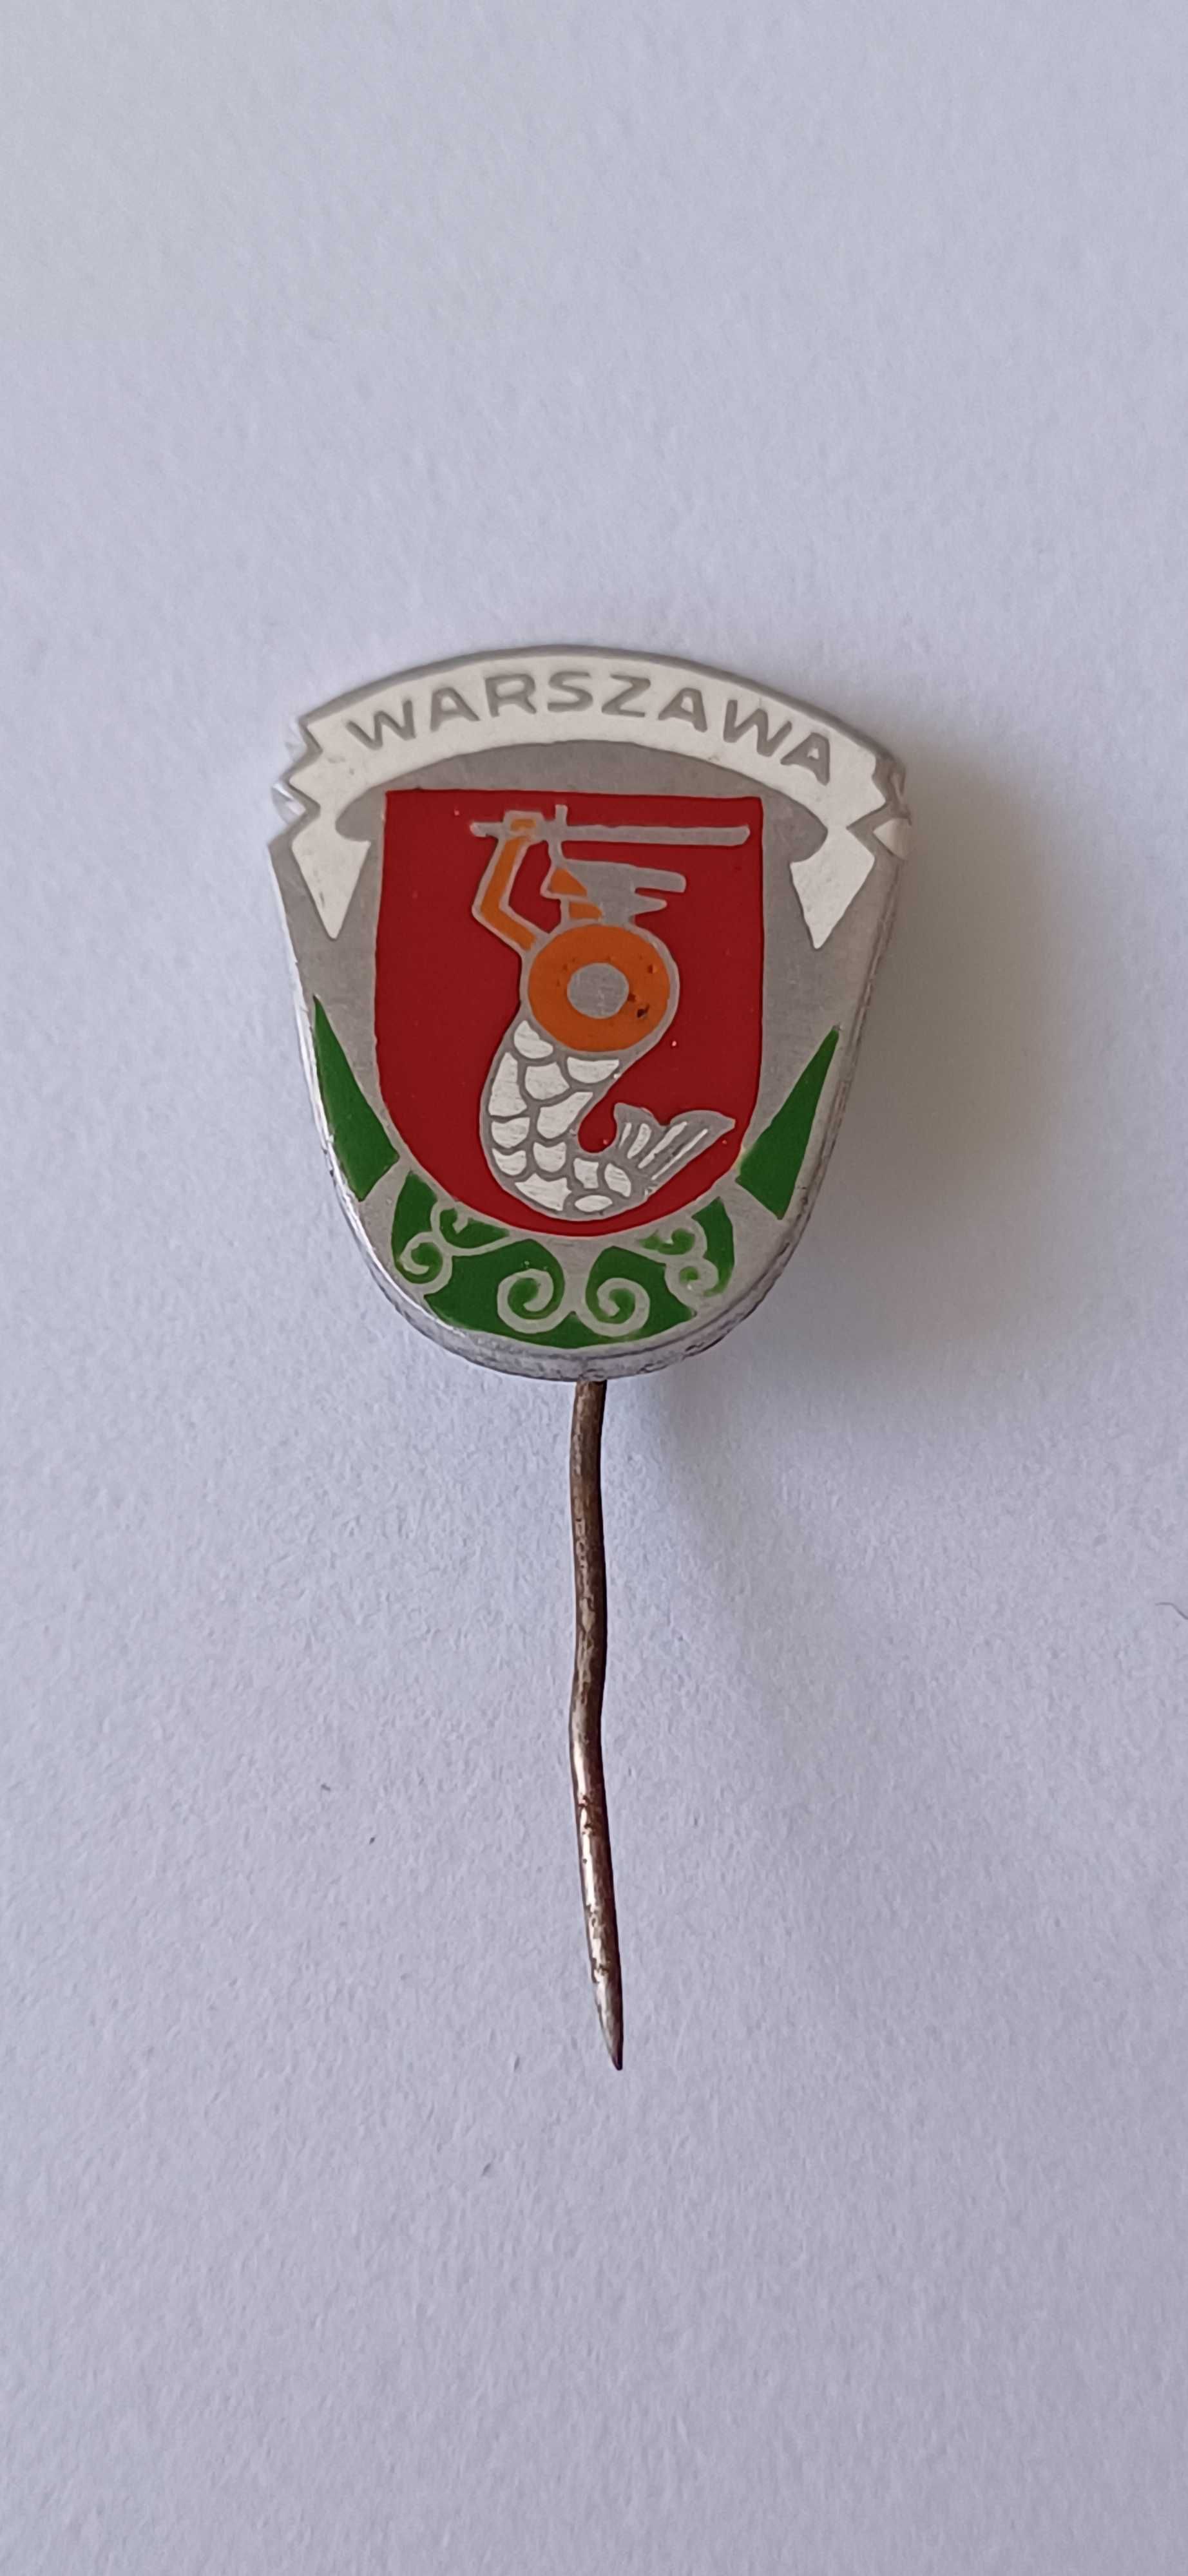 Stara przypinka PRL Warszawa emaliowana